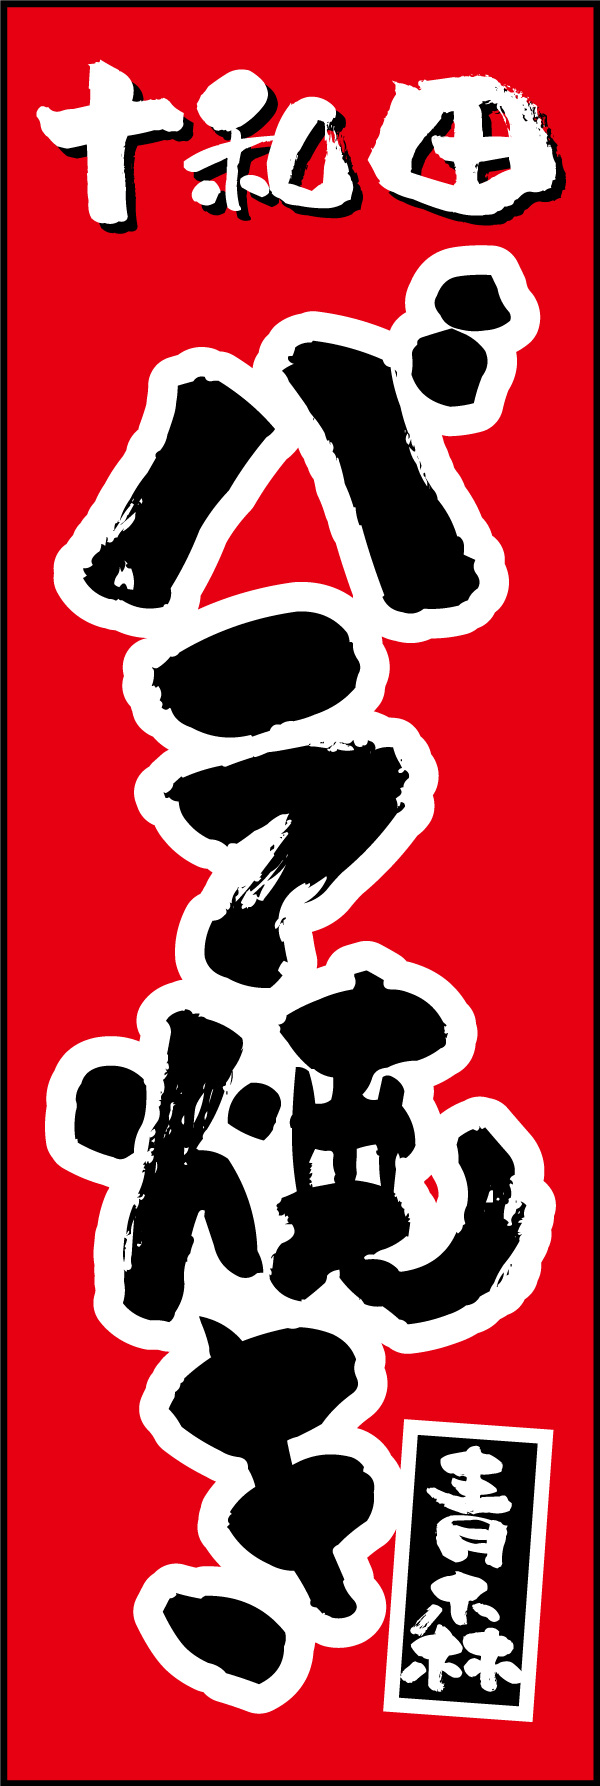 バラ焼き 154_01 「バラ焼き」の幟です。青森県十和田名物のバラ焼きの濃厚な味付けを彷彿とさせるデザインに仕上げました。（Y.M）